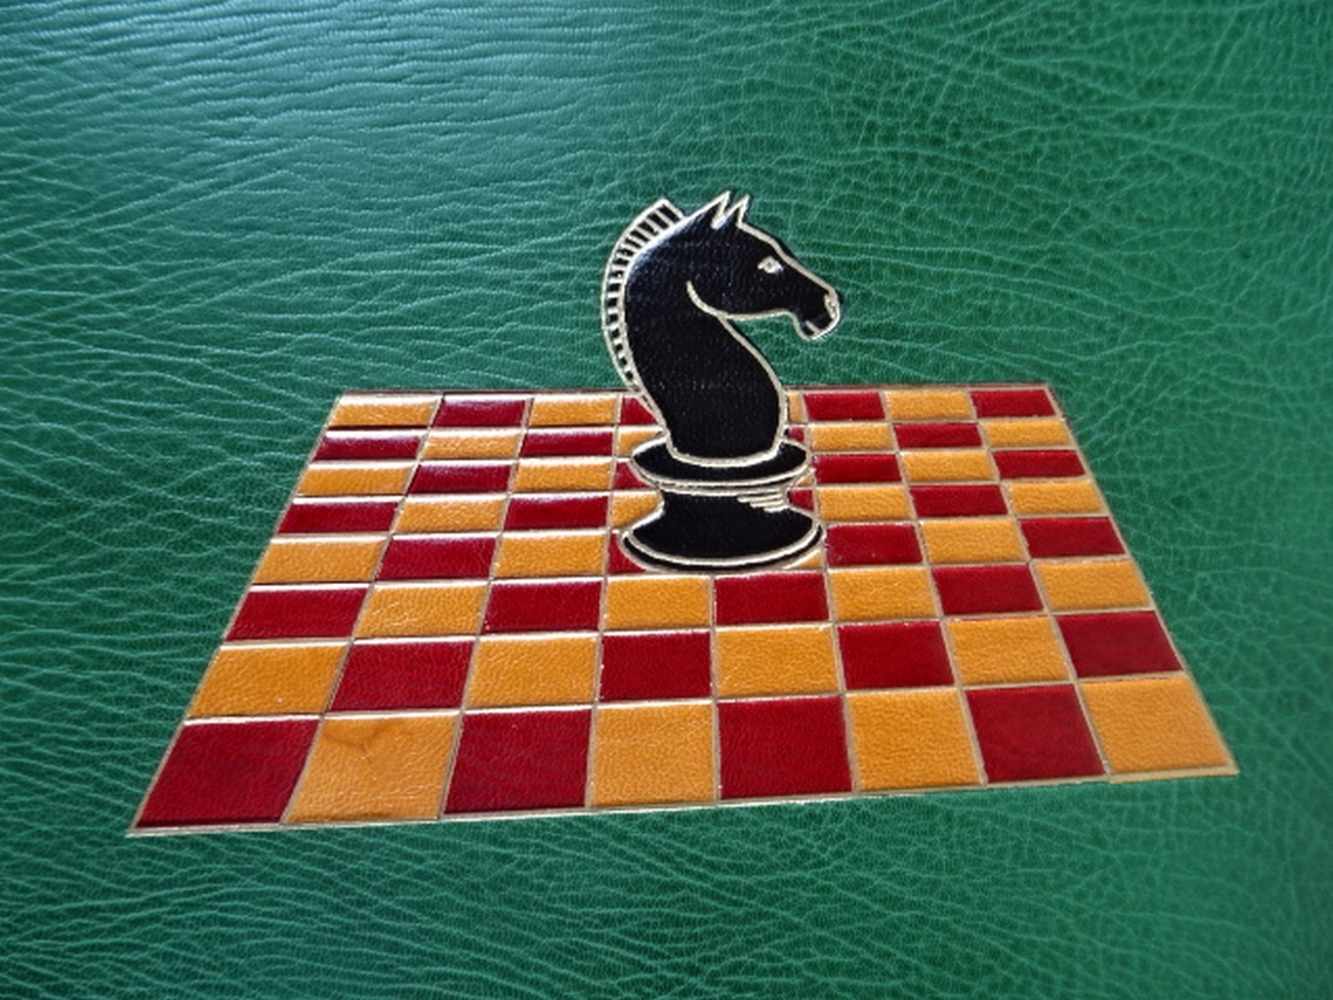 Einbände.-Gästebuch eines Schachspielers. Ca. 150 weiße Blätter. Um 1970. 4°. Grüner Maroquin- - Image 2 of 6